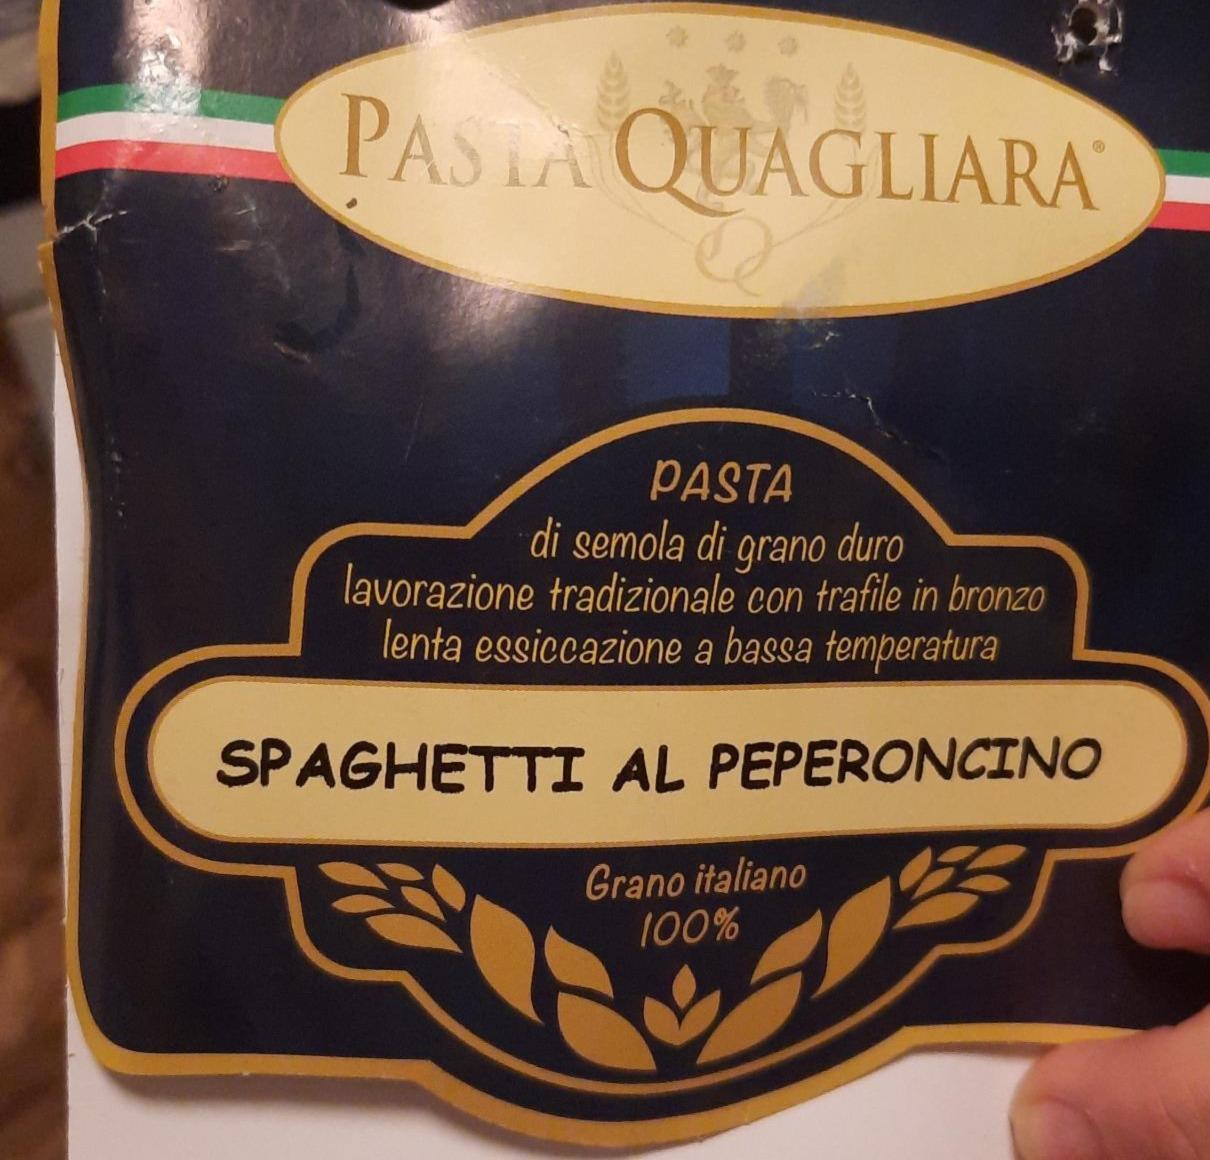 Fotografie - Spaghetti al Peperoncino Pasta Quagliara